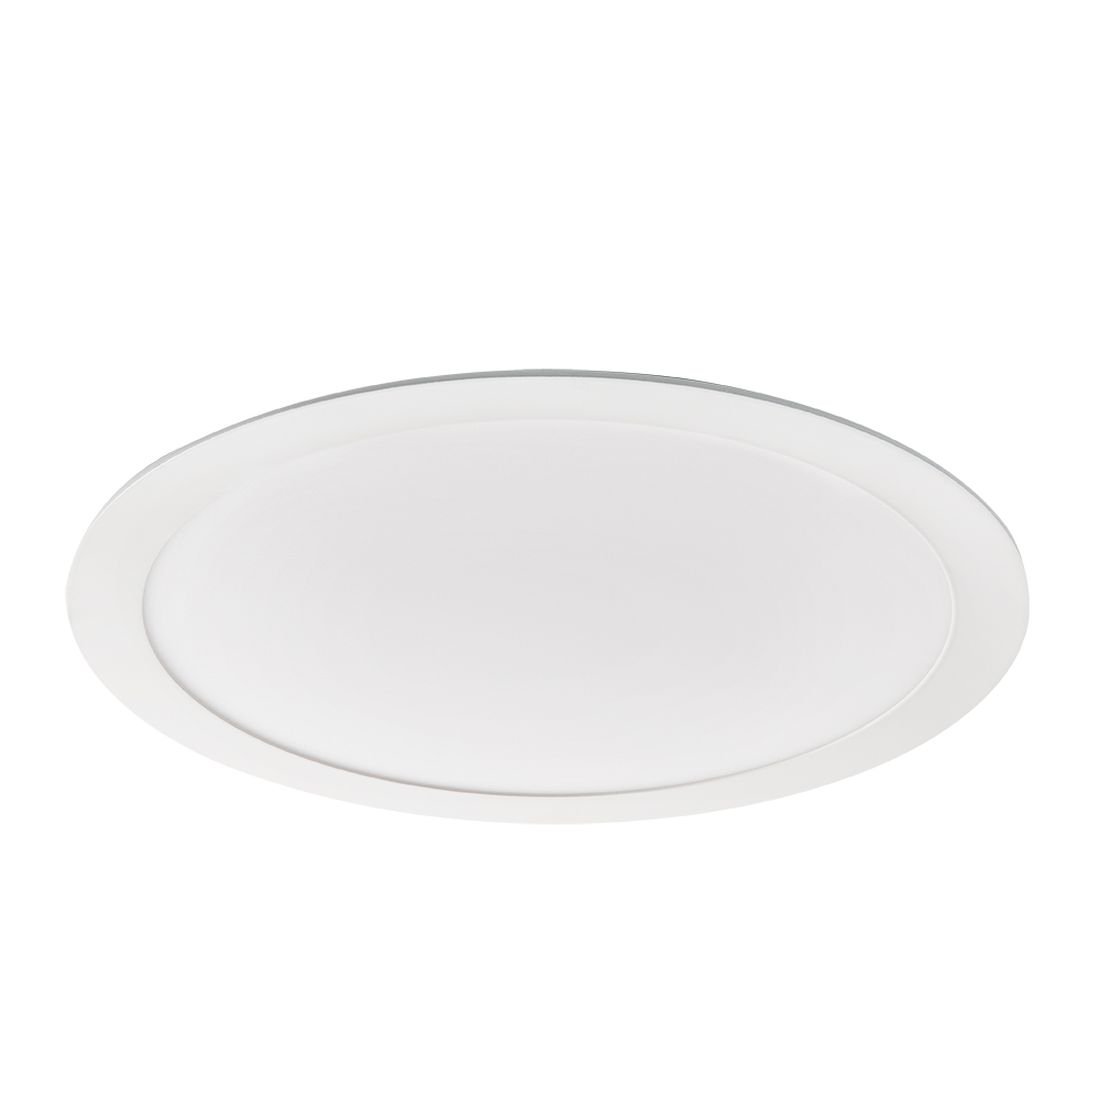 Kanlux Oprawa techniczna LED Rounda 24W-WW-W, biała, 24 W